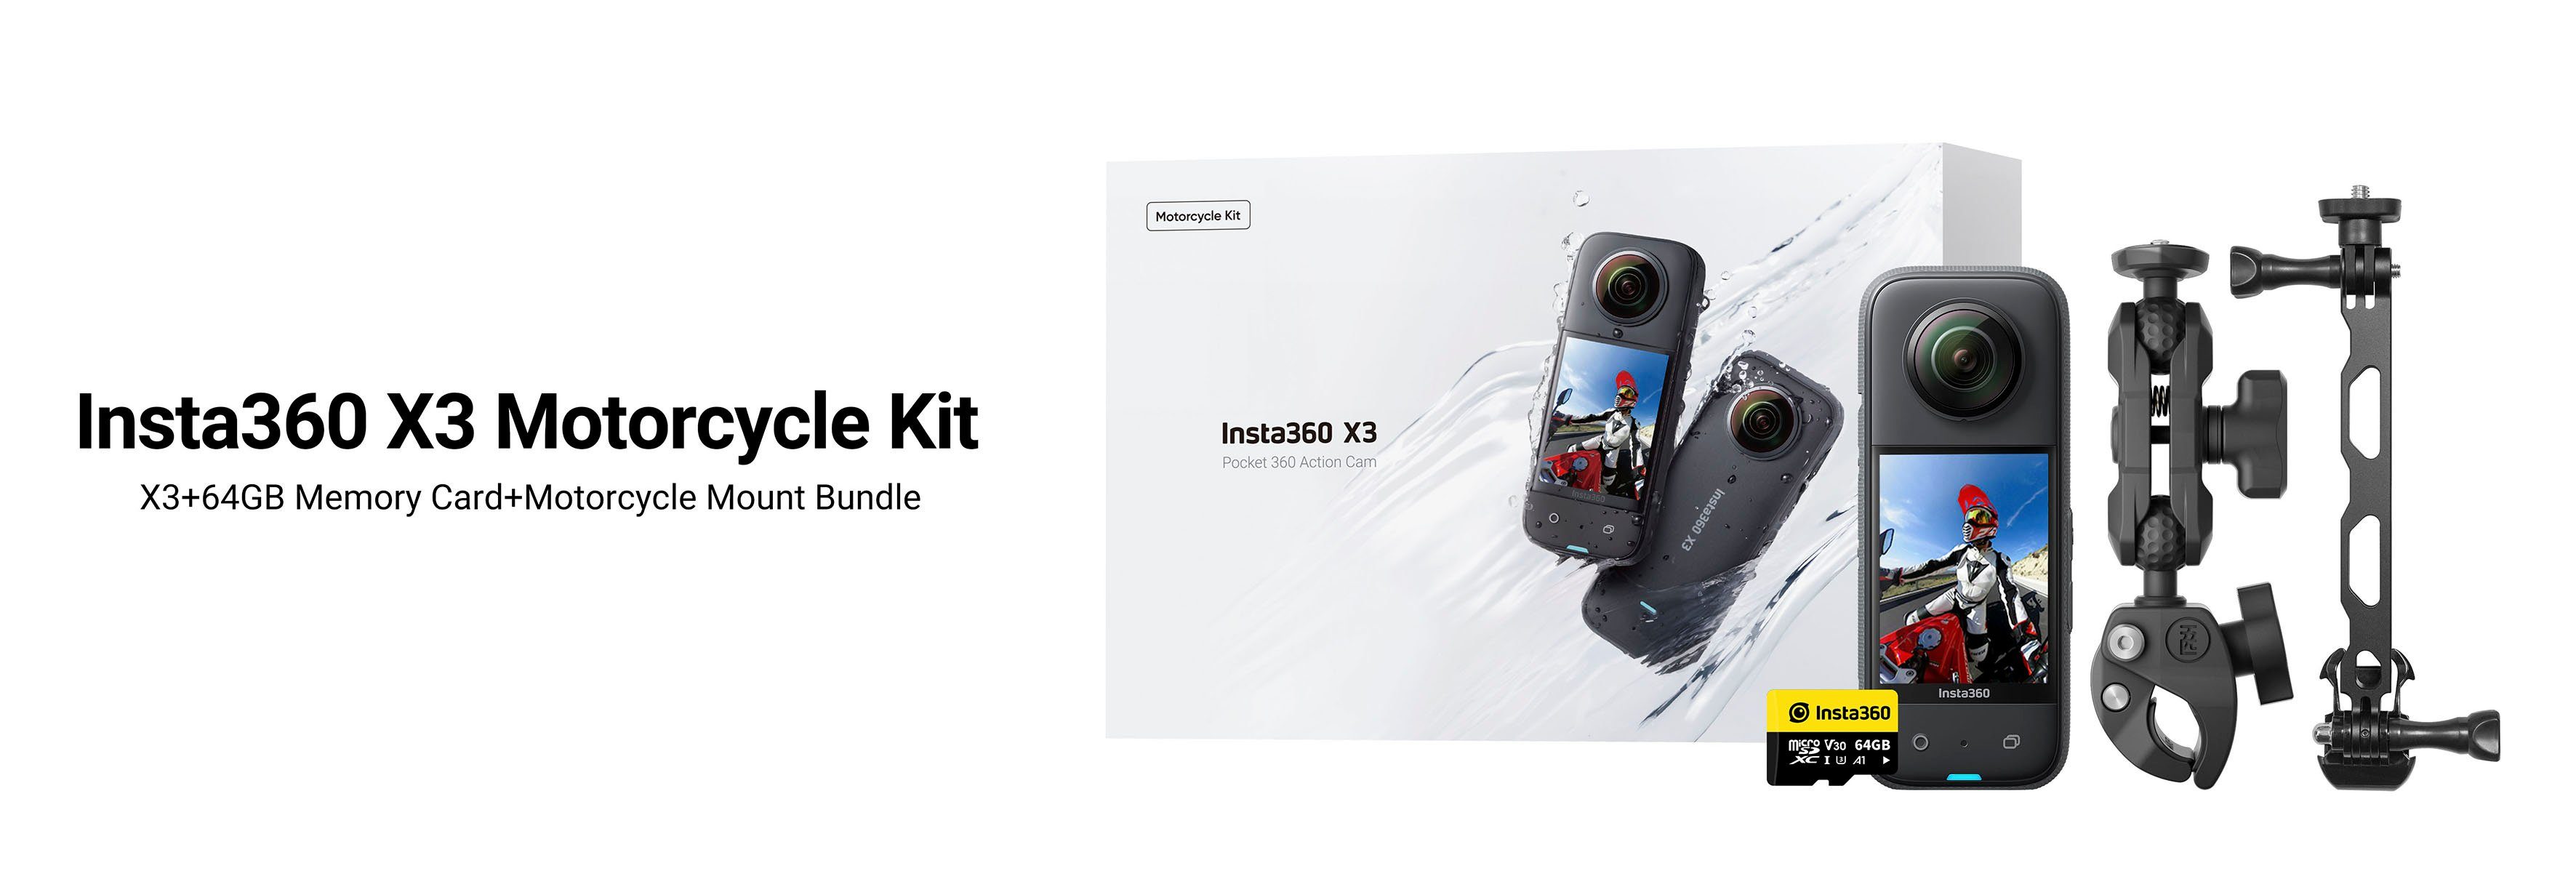 Insta360 X3 WLAN (Wi-Fi) Kit (5,7K, Motorcycle Camcorder Bluetooth,